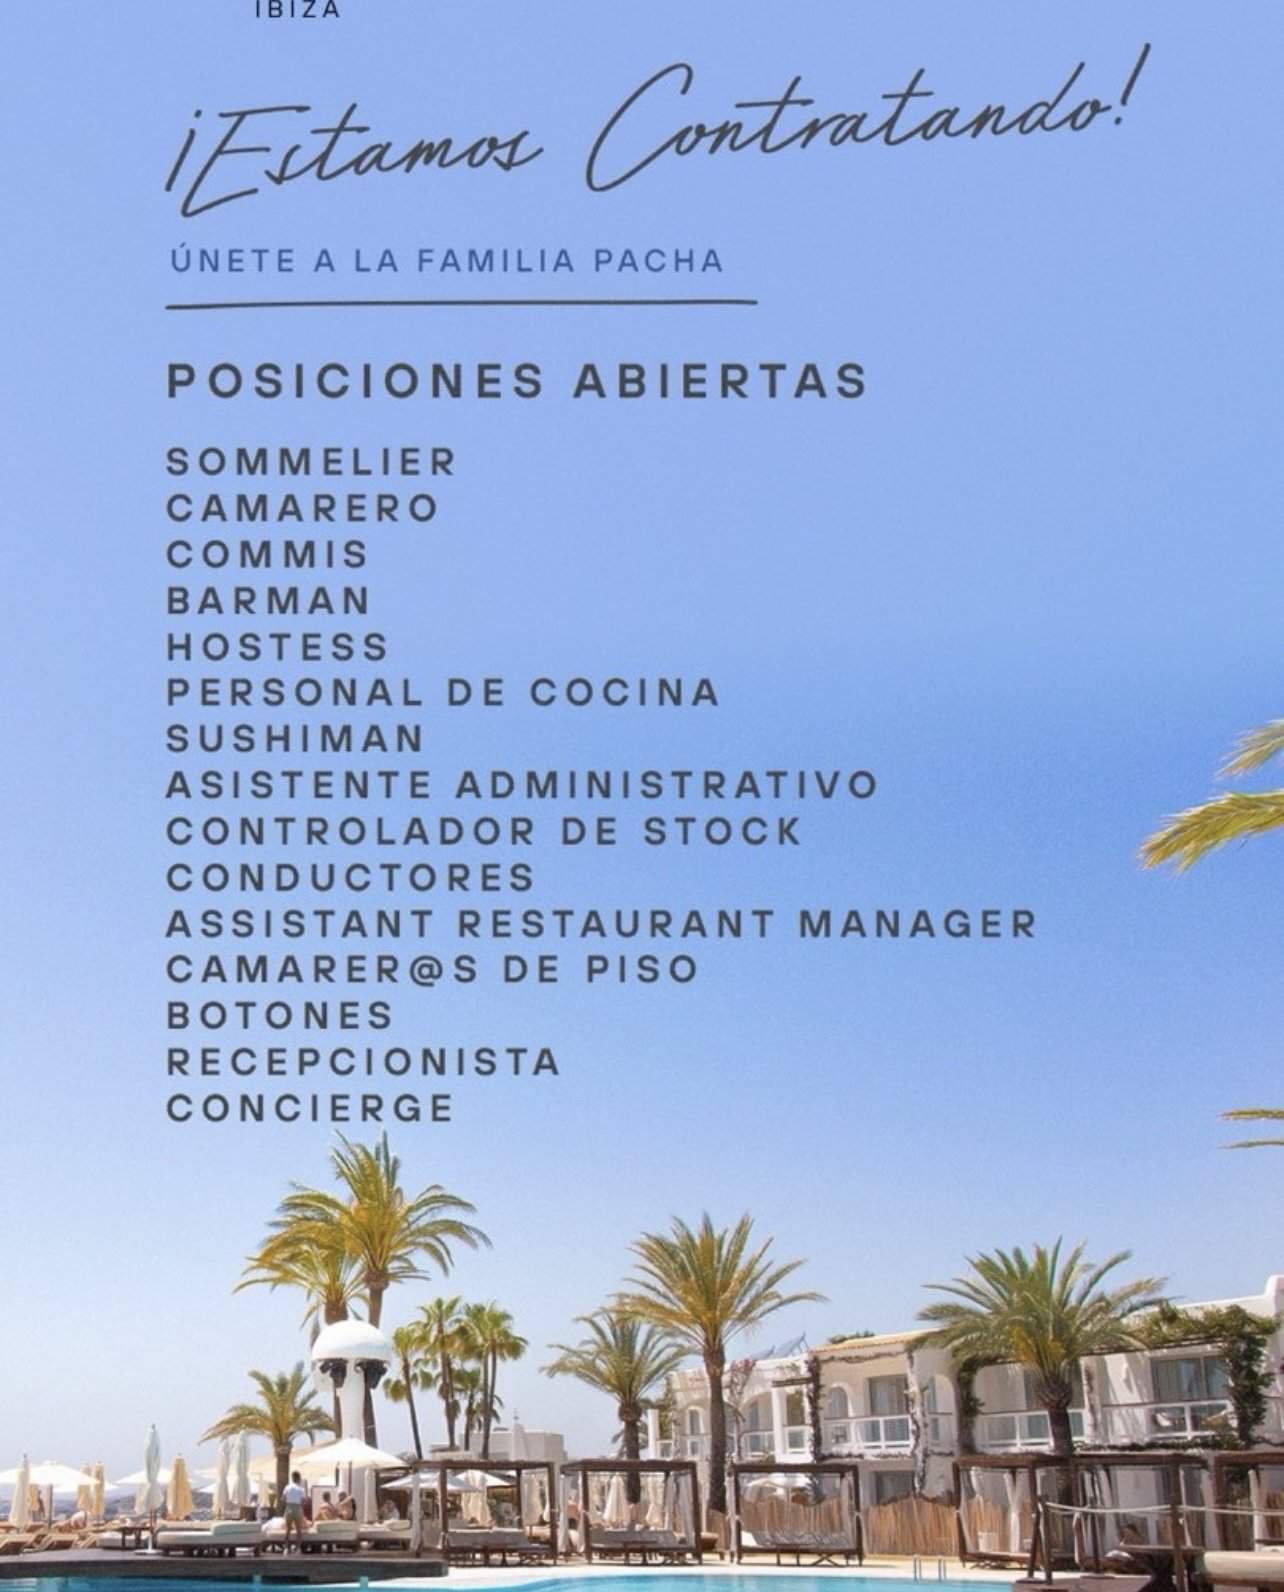 Trabajo en Ibiza 2024: Destino Pacha Ibiza busca personal